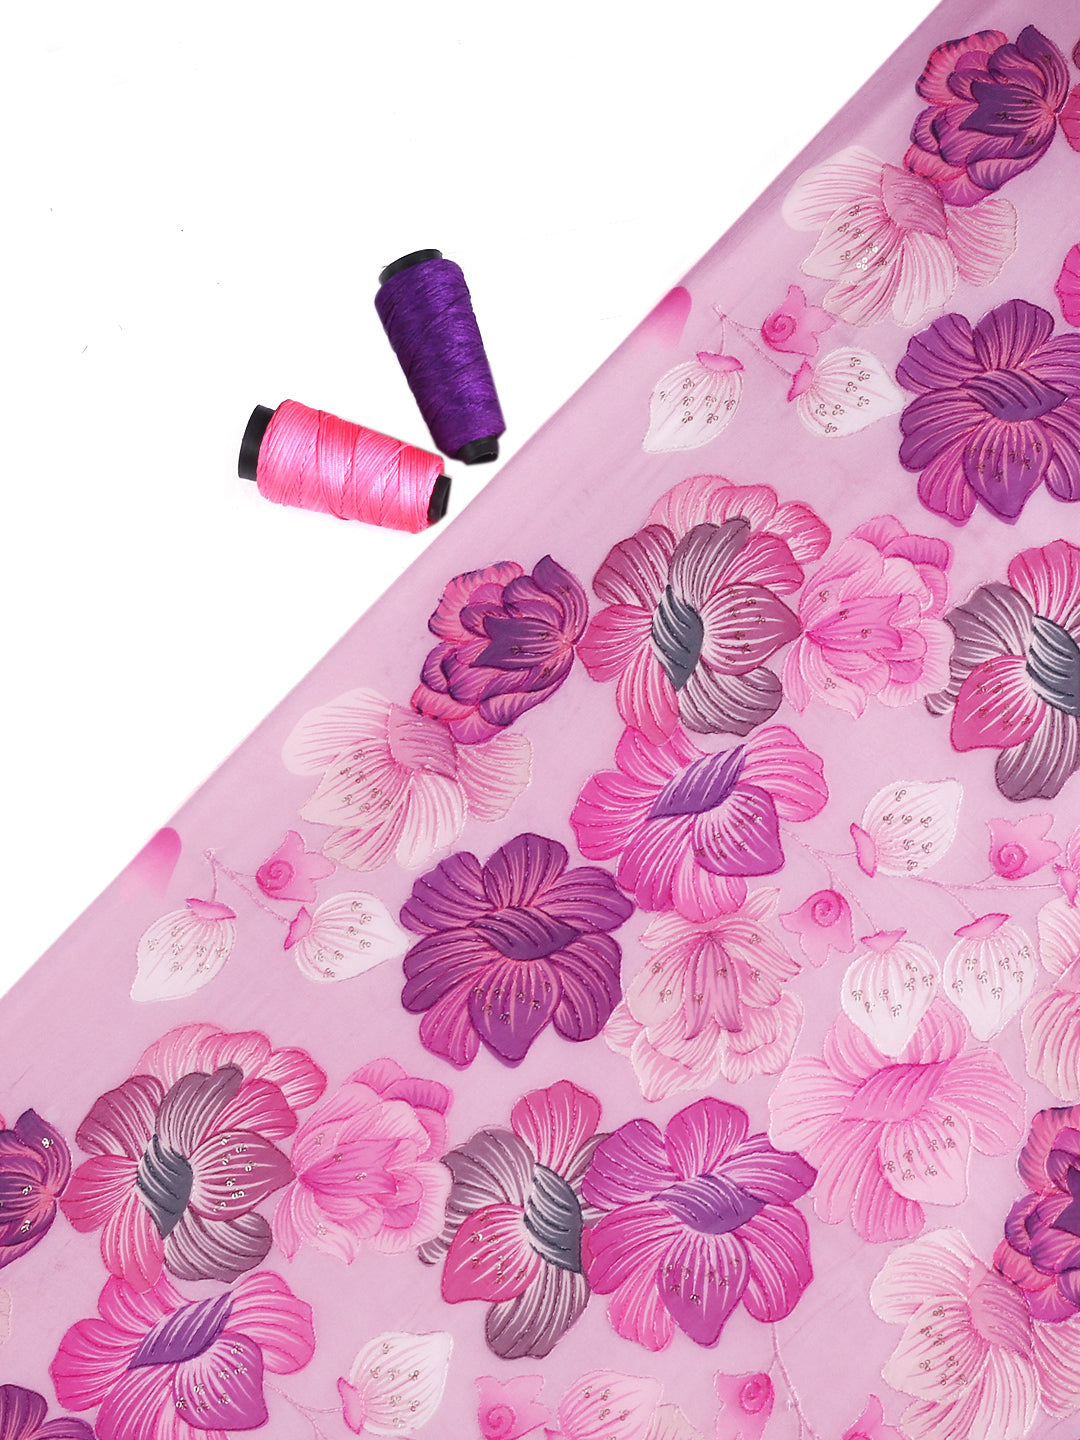 Shades Of Pink & Wine Floral Printed Georgette Fabric With Aari Work